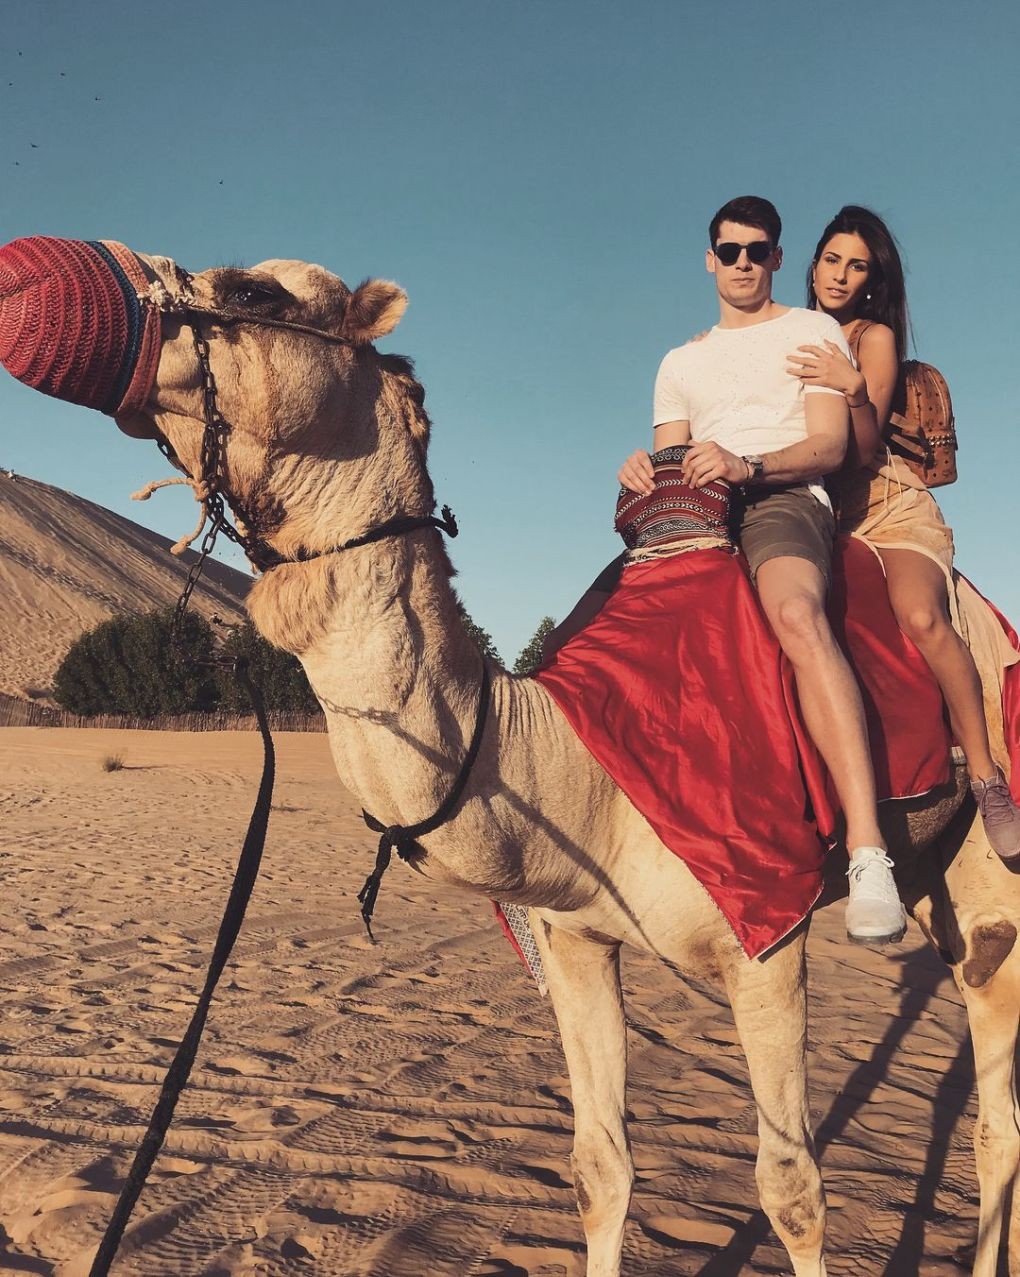 Năm 2017, khi còn đang hẹn hò, hai người đã có chuyến du lịch tới Abu Dhabi, UAE, trải nghiệm cưỡi lạc đà, ngắm hoàng hôn trên sa mạc cát.